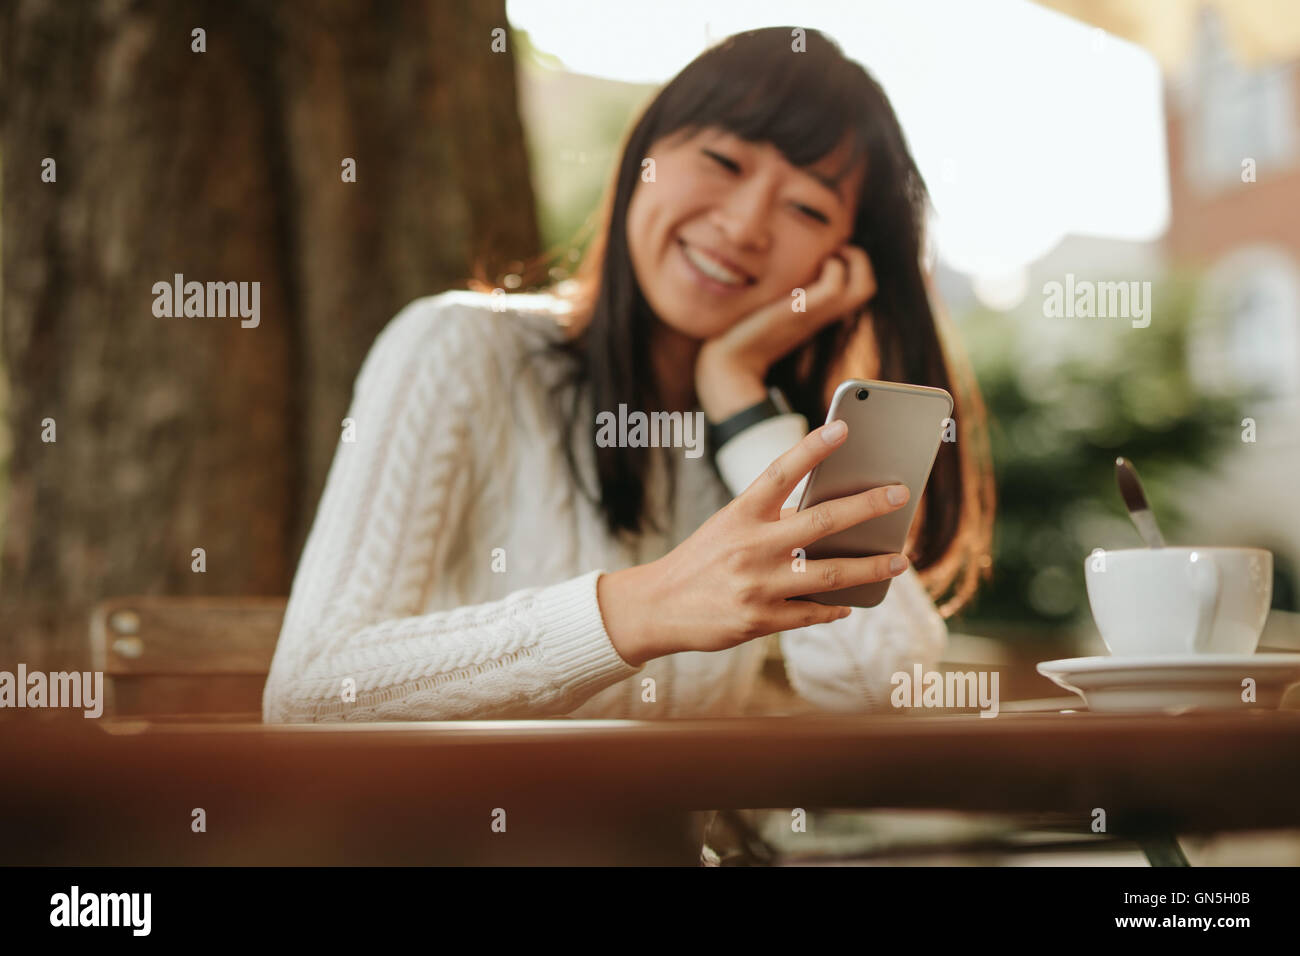 Smiling young woman looking at mobile phone dans sa main alors qu'il était assis au café en plein air. Modèle féminin de la lecture de texte message sur smar Banque D'Images